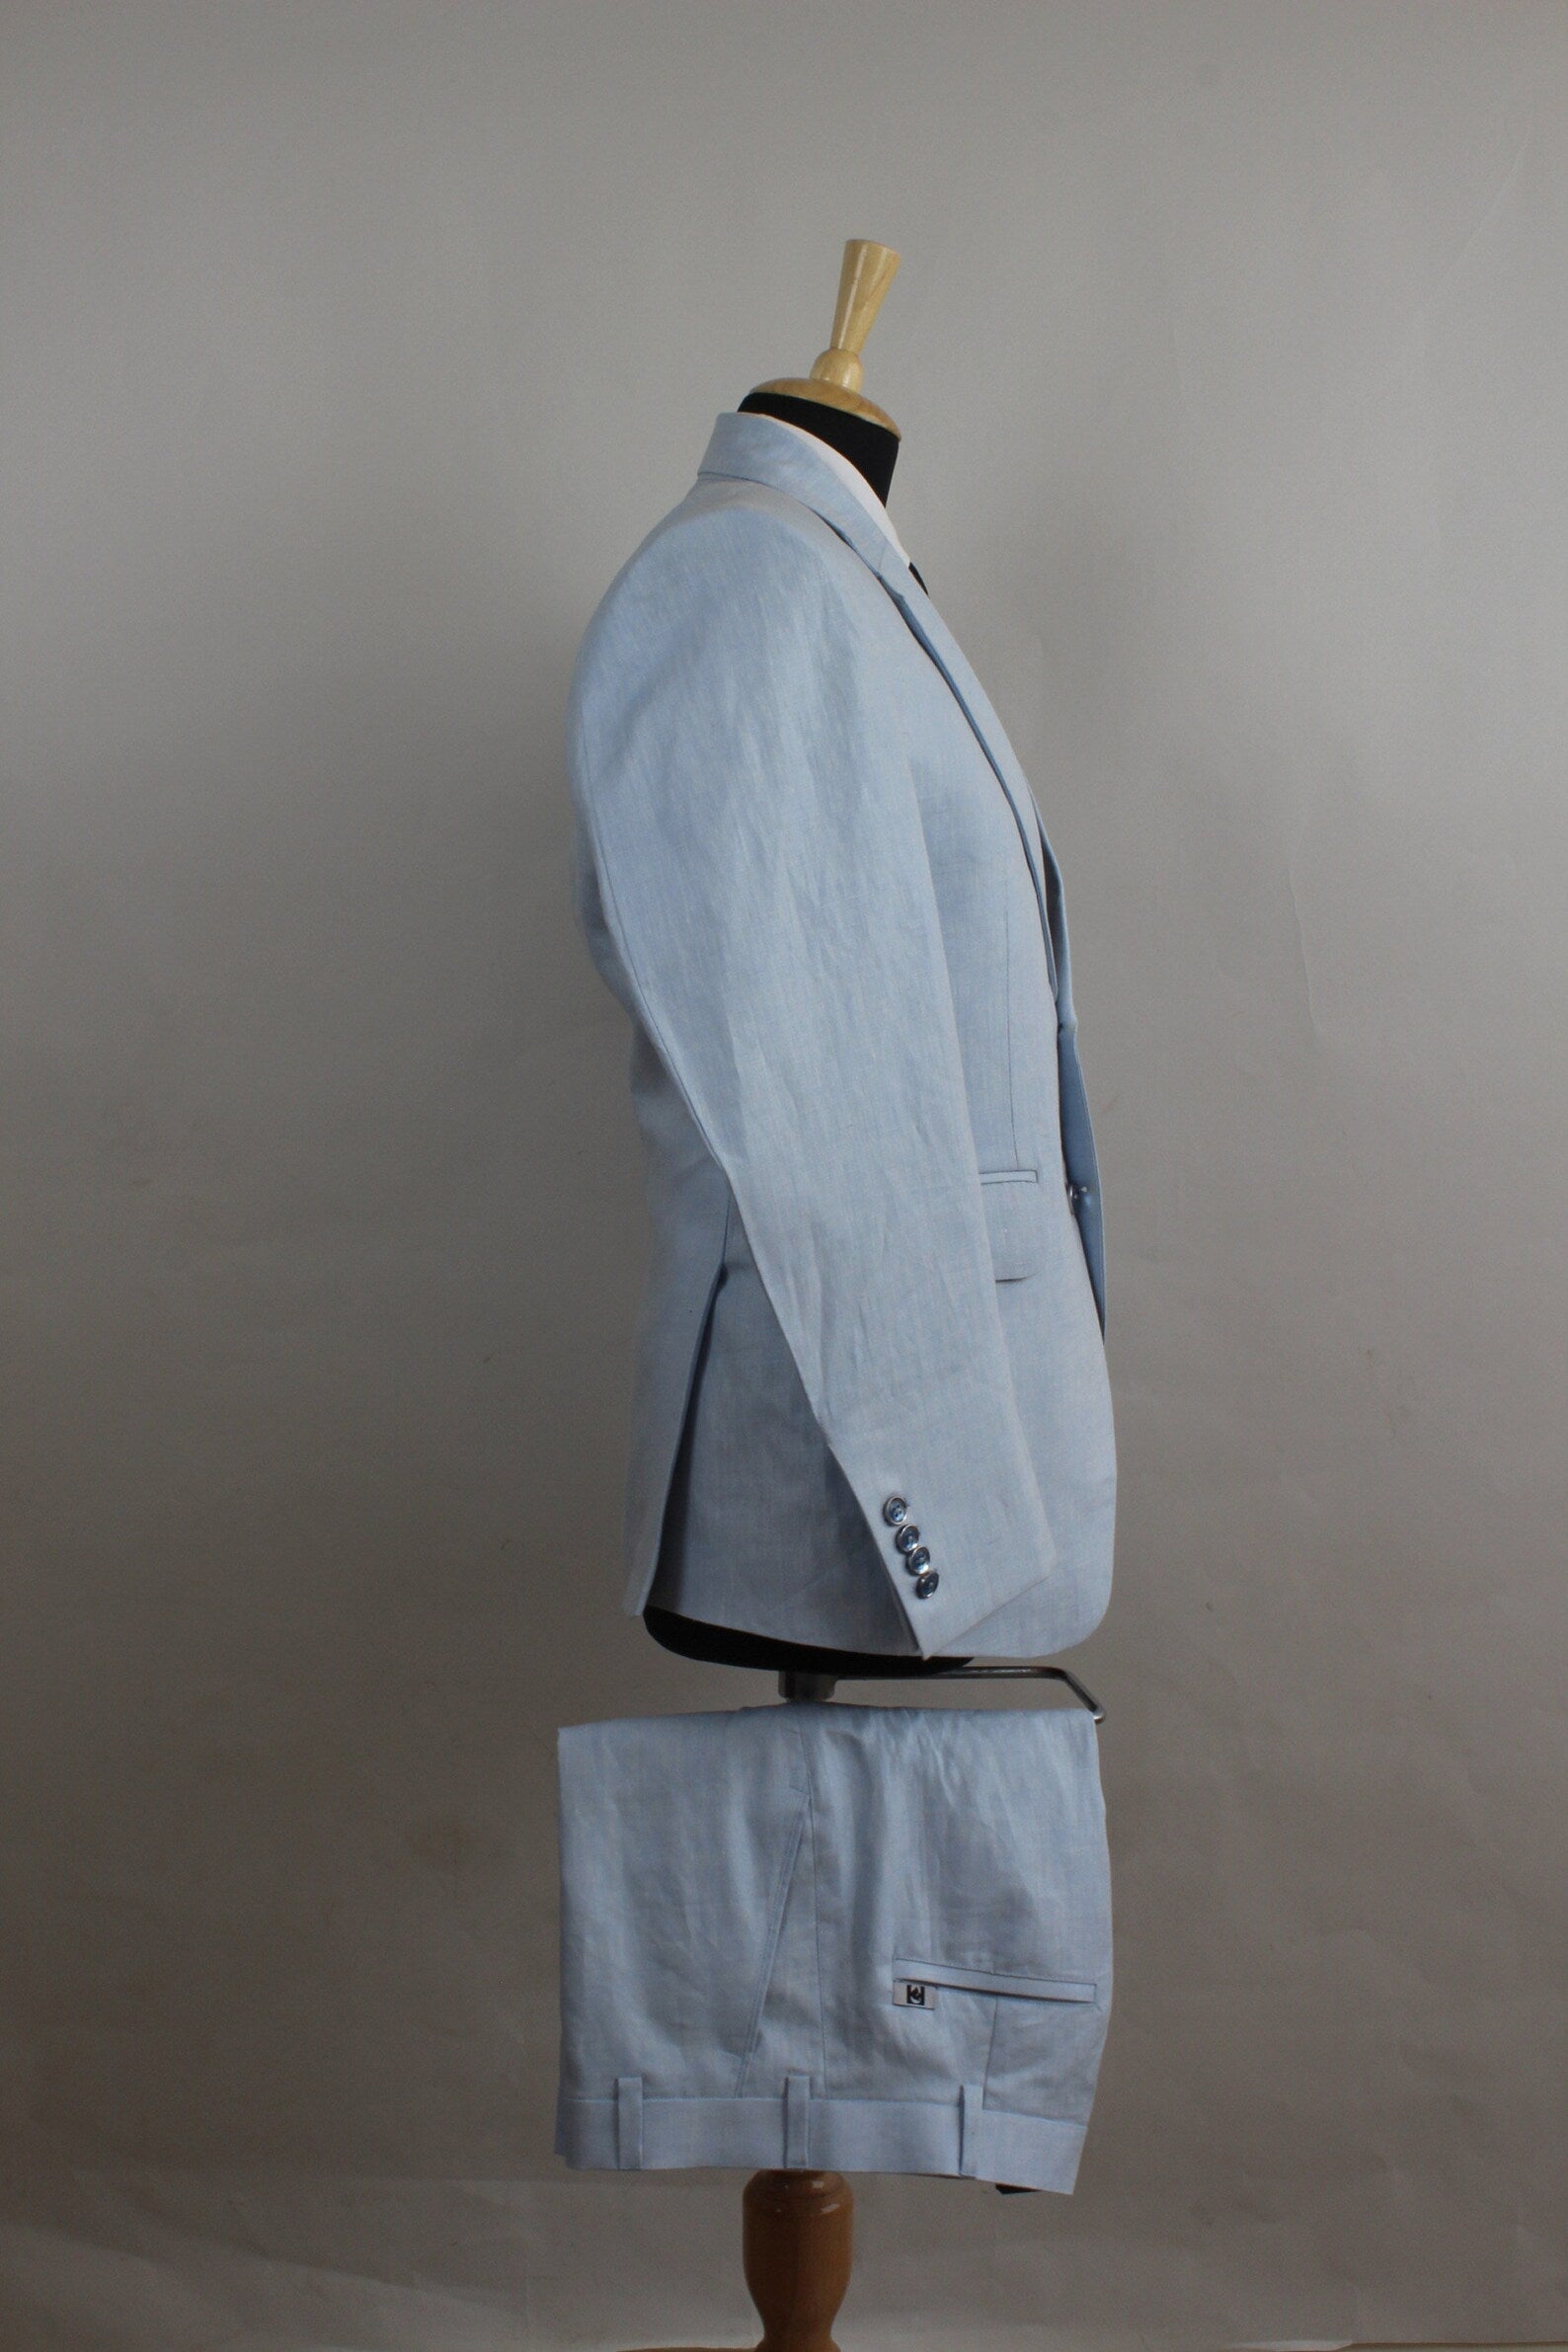  Light Blue Linen Suit